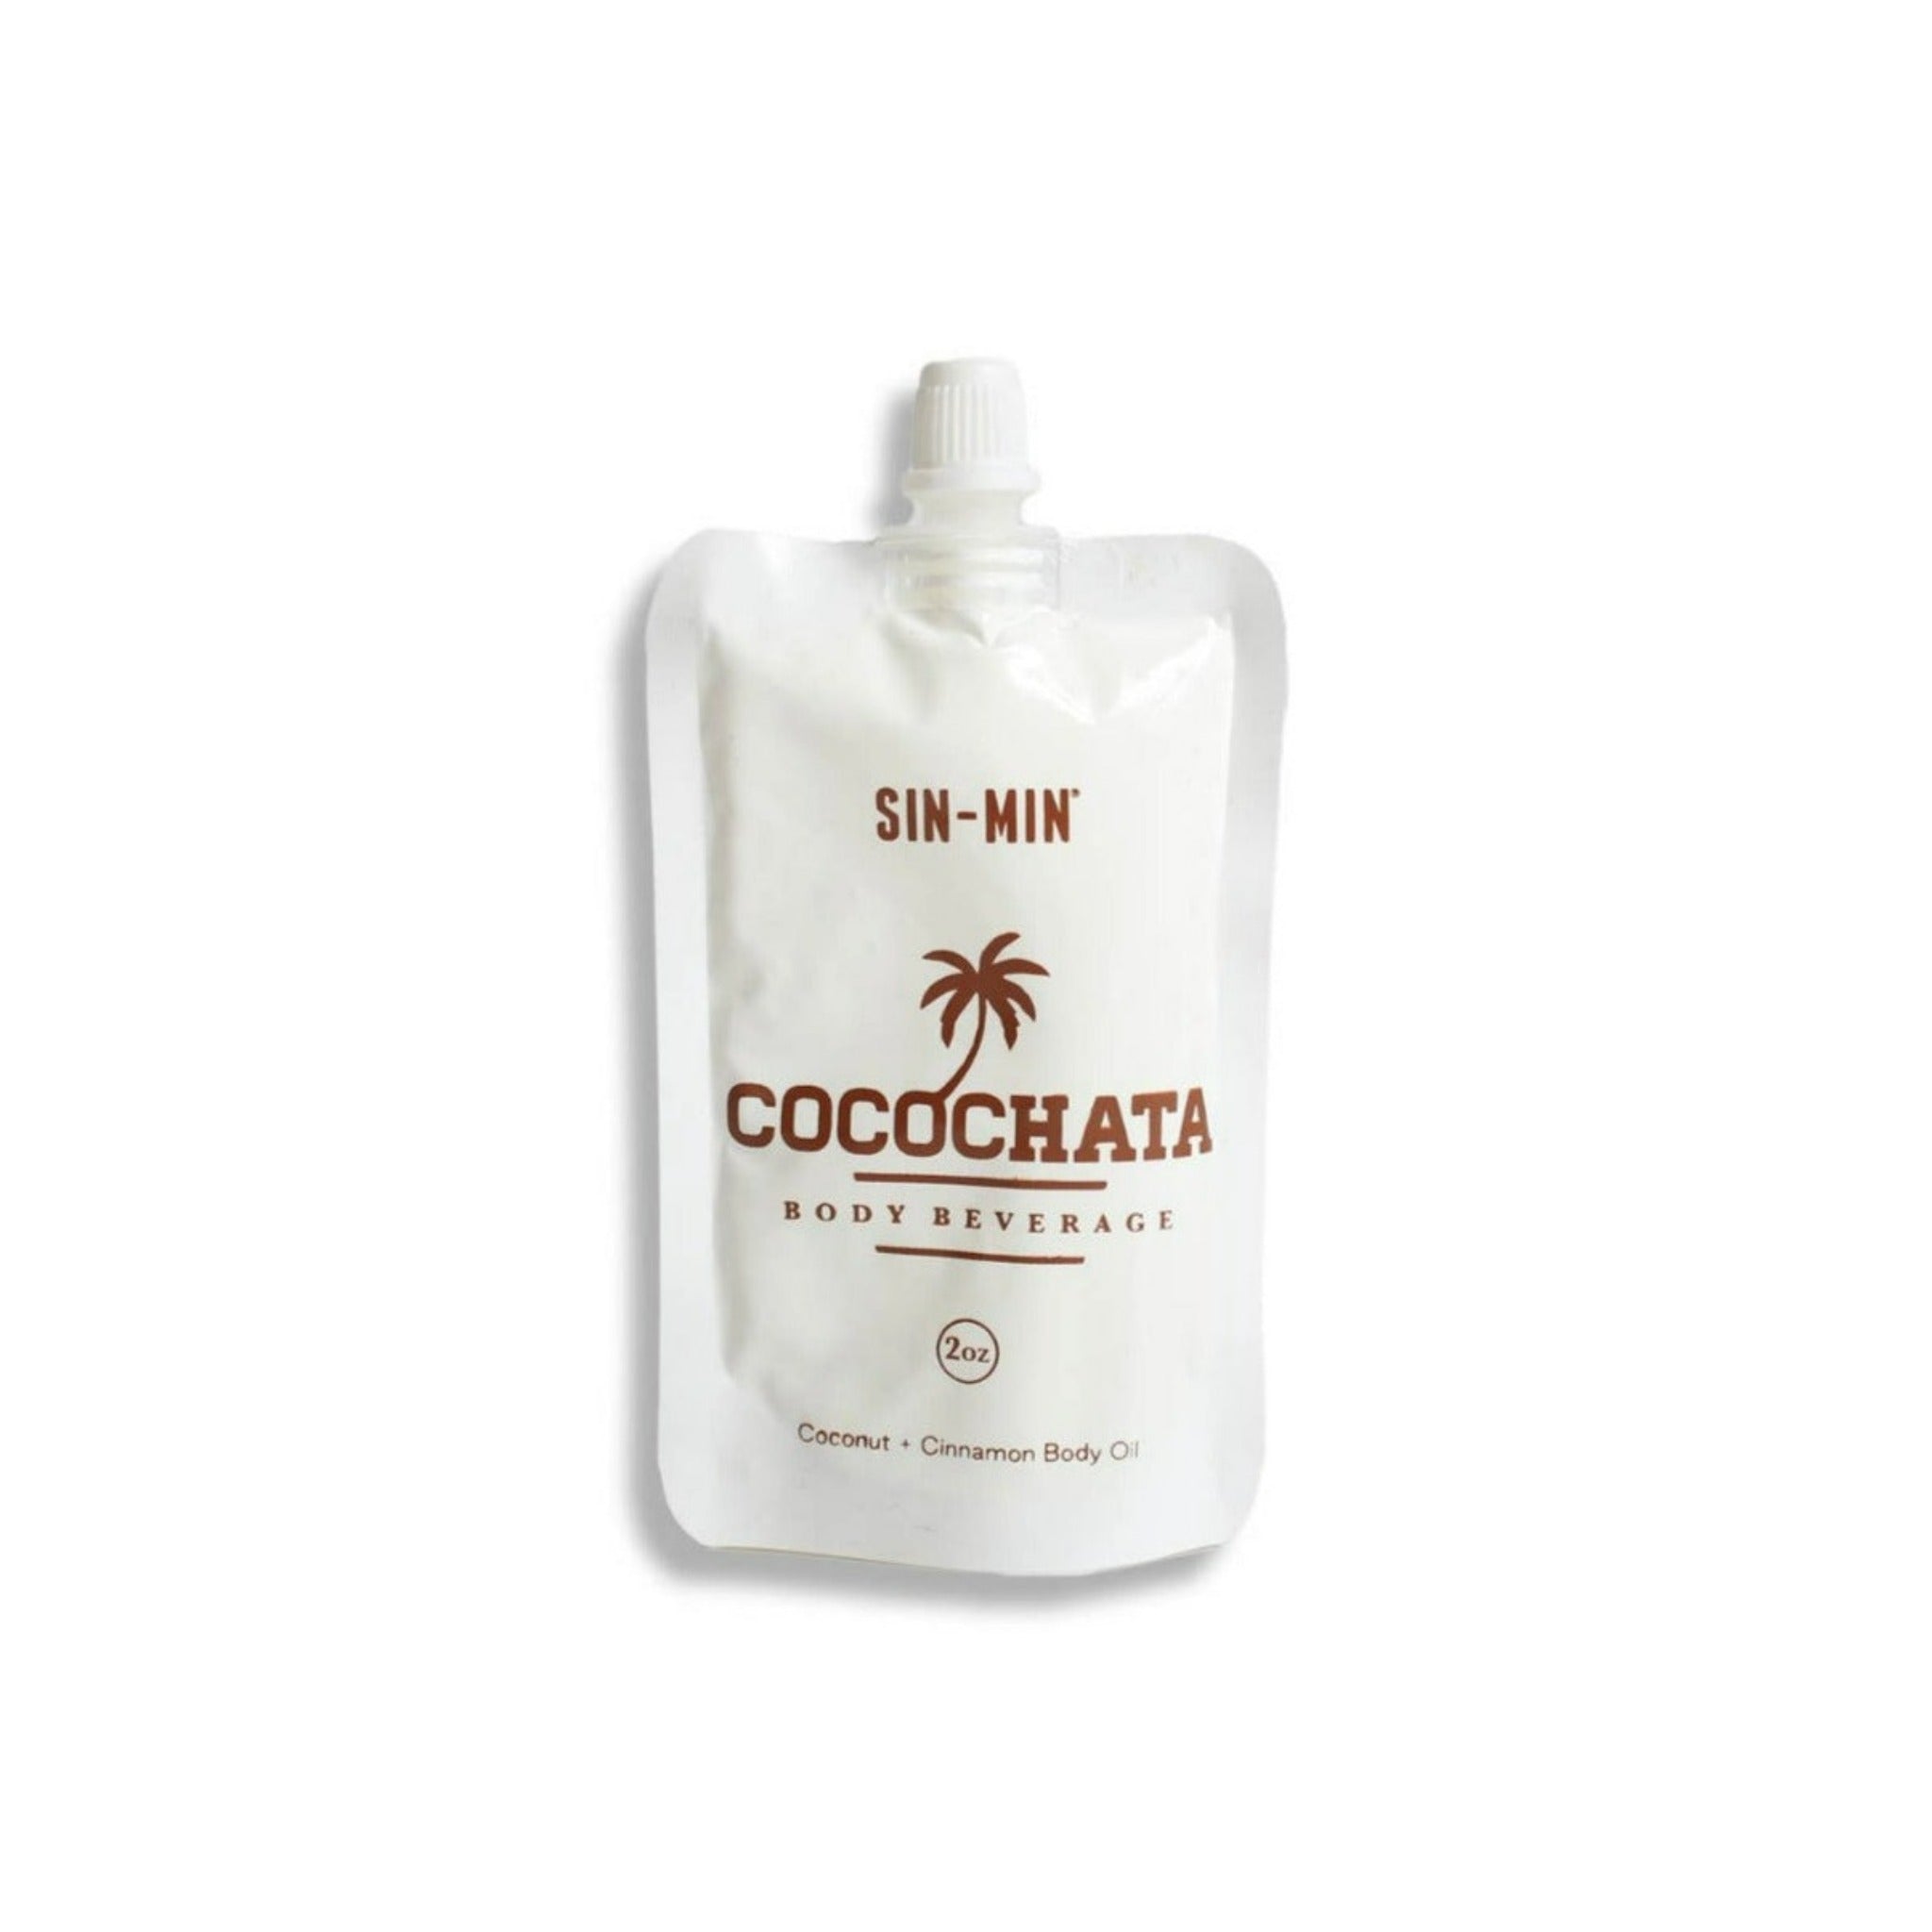 COCOCHATA Body Beverage - Coconut + Cinnamon BODY OIL